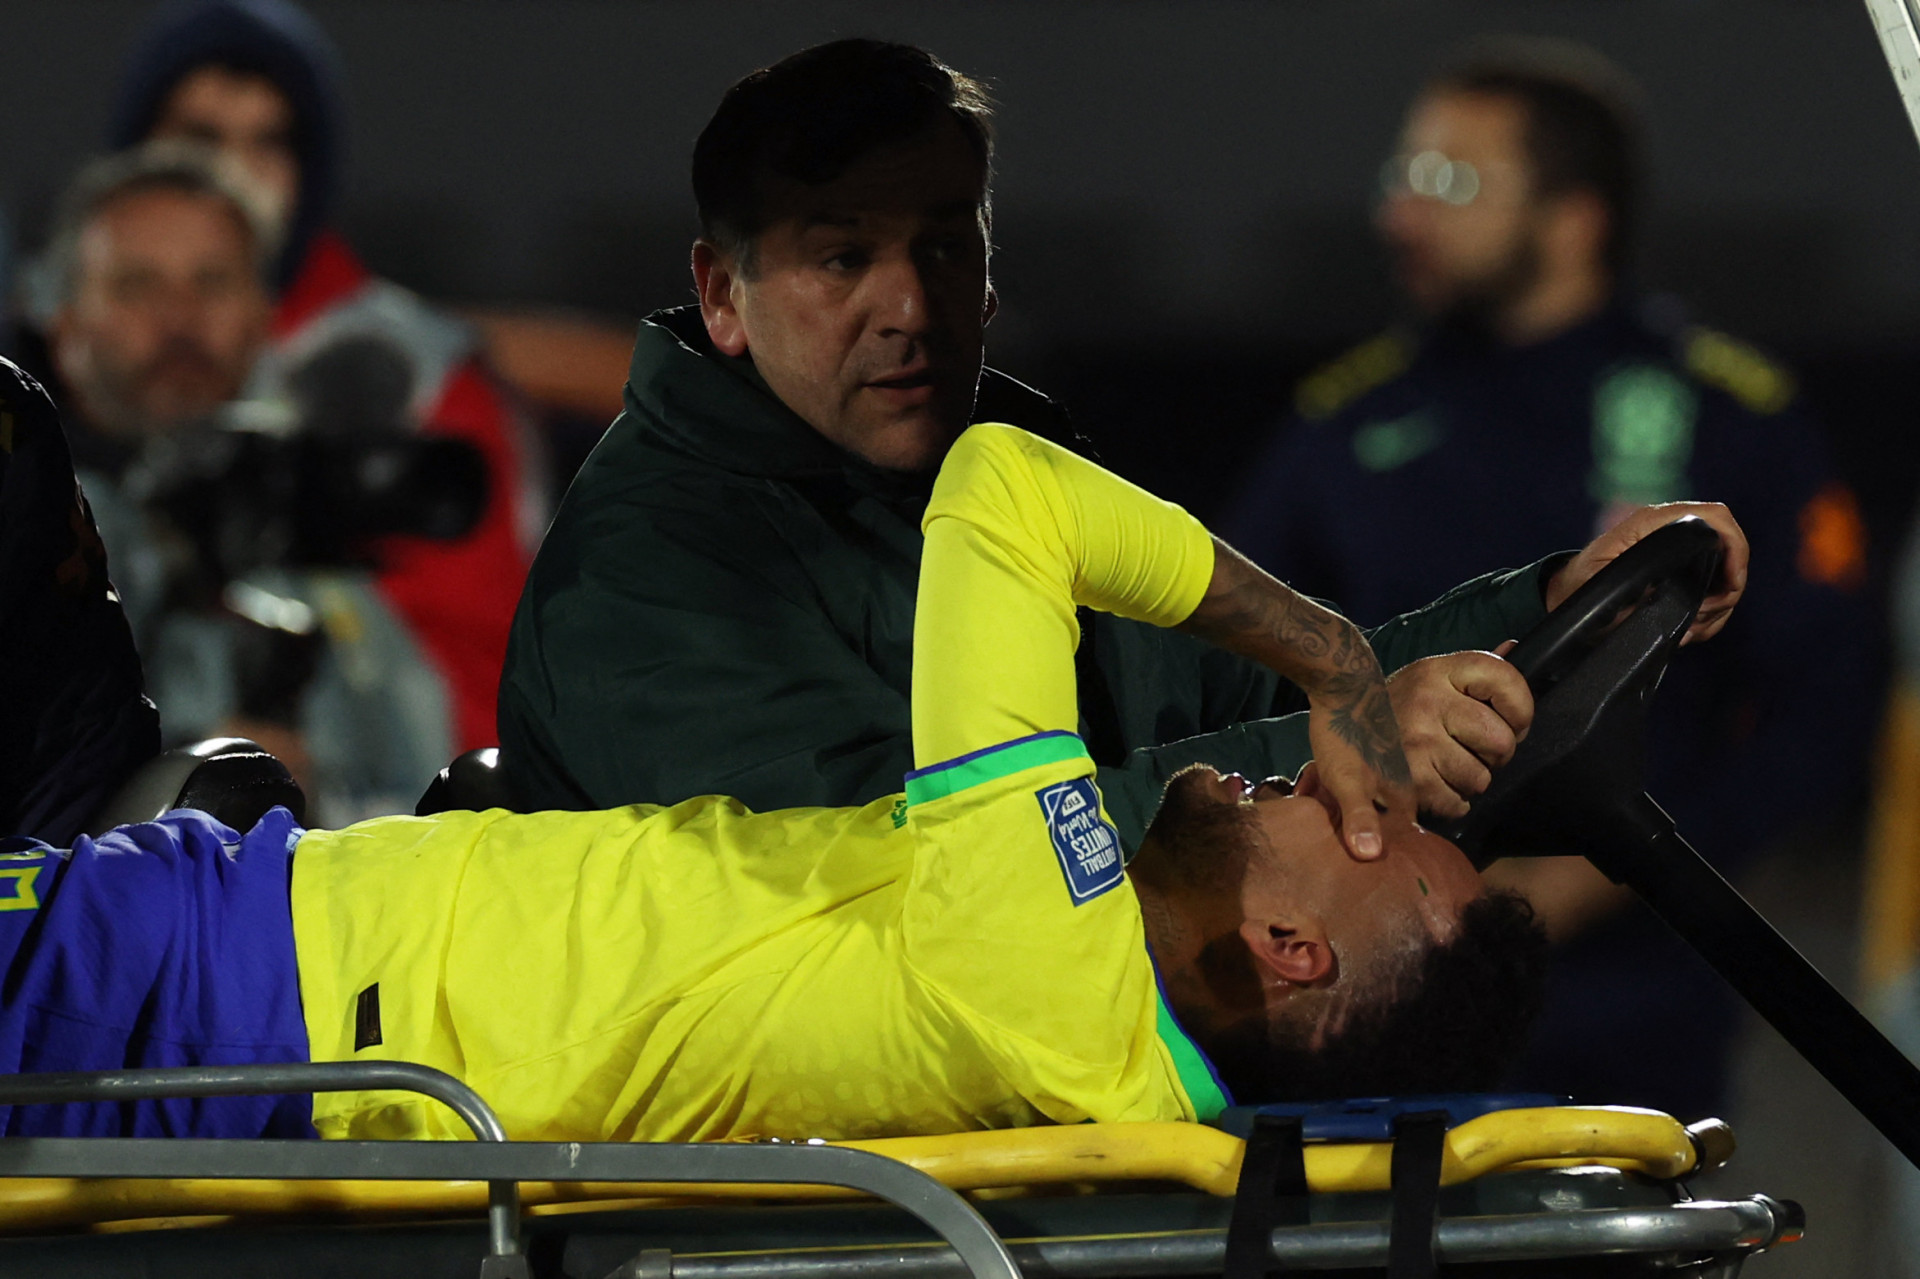 Bonde dos Carecas'! Como craques ficariam em novo estilo de Neymar? - Fotos  - R7 Futebol